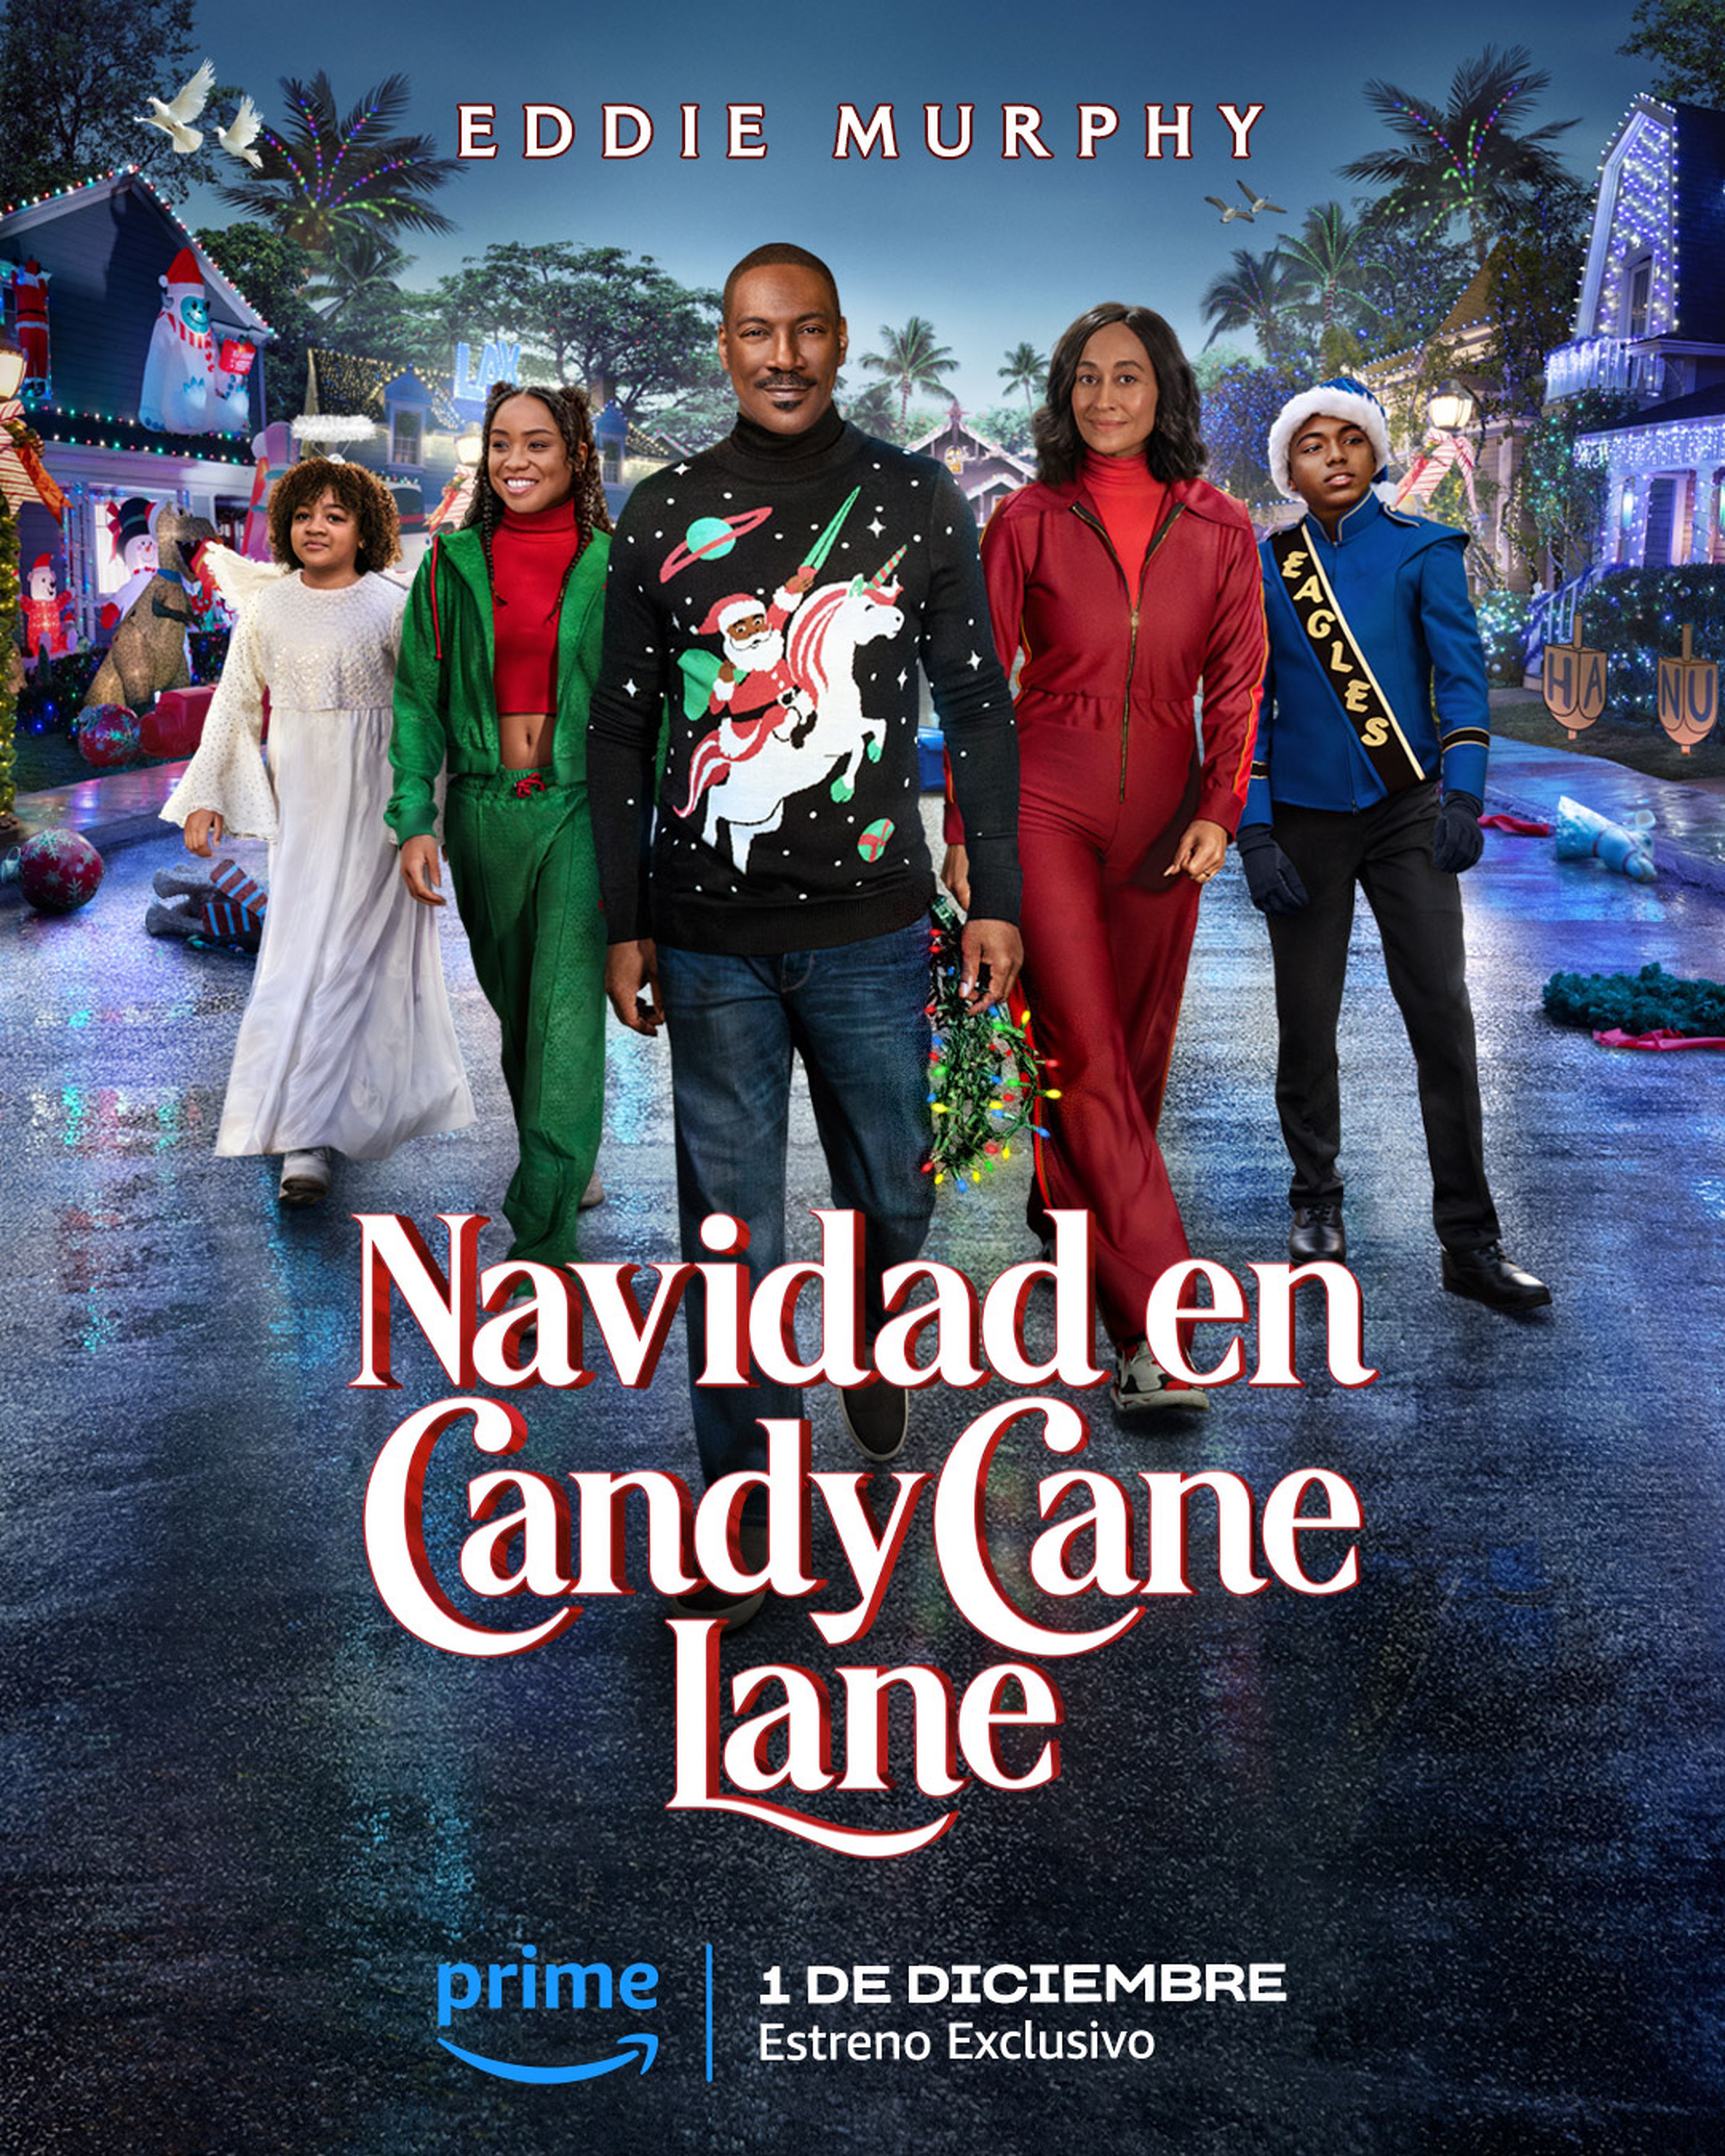 Nuevo póster de Navidad en Candy Cane Lane